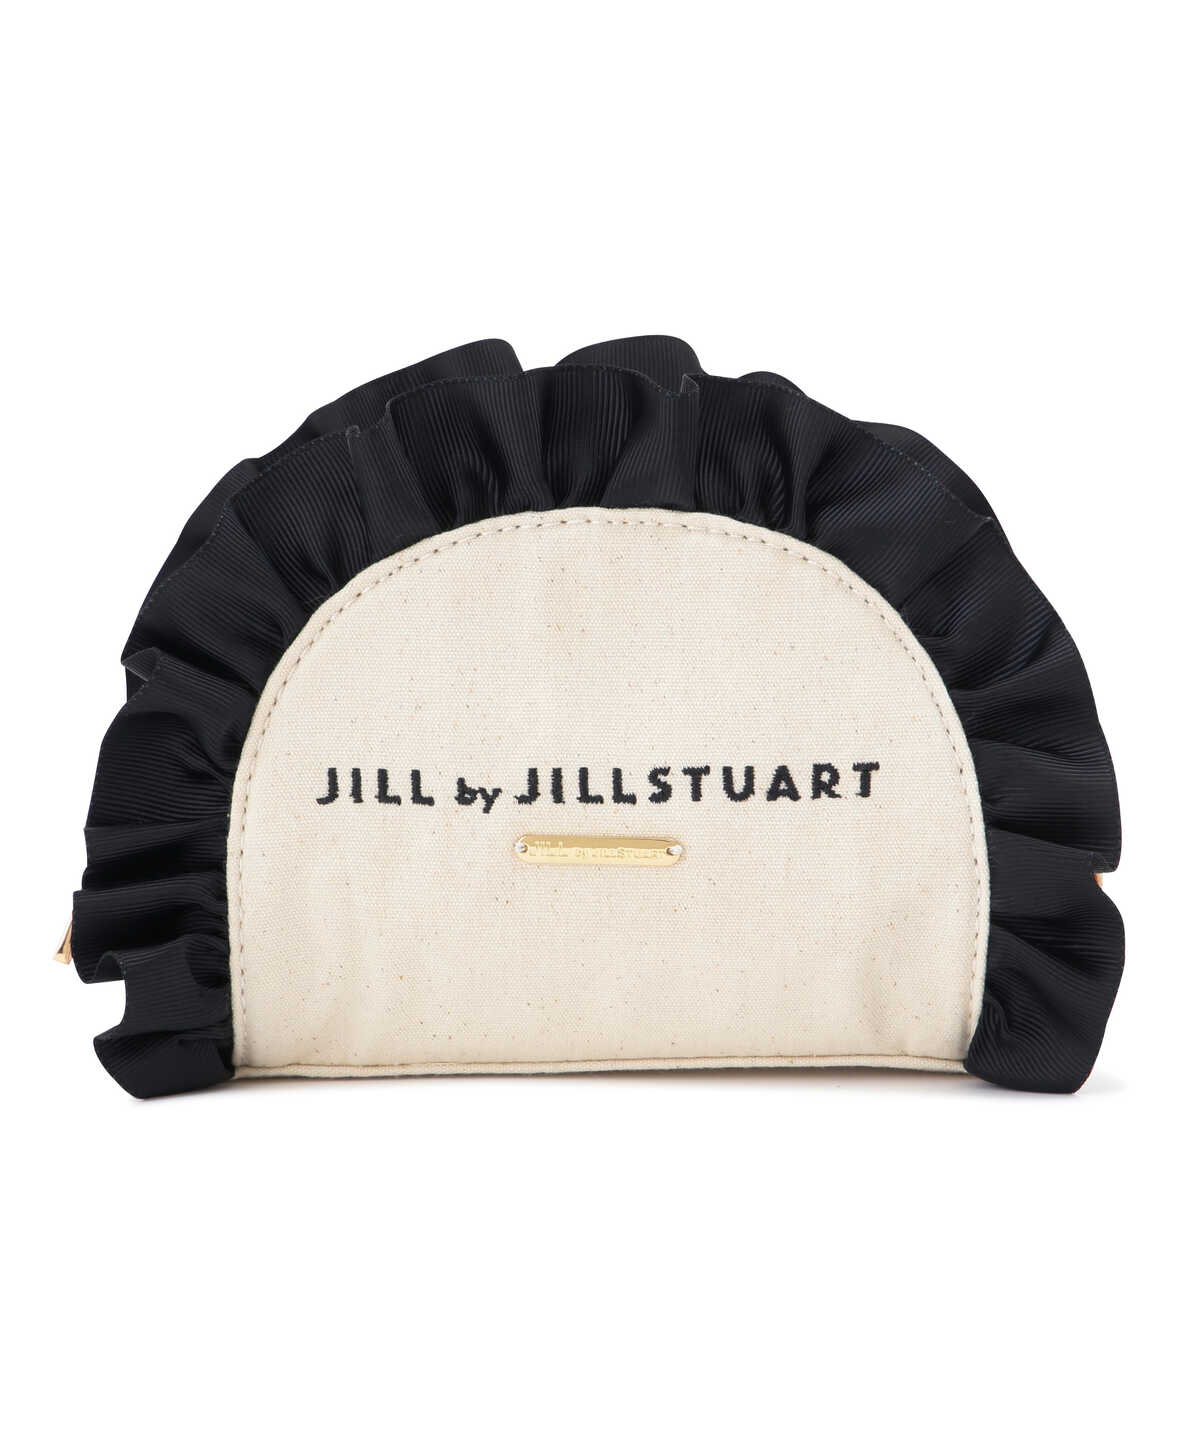 ラウンドフリルポーチ | JILL by JILL STUART | サンエービーディー